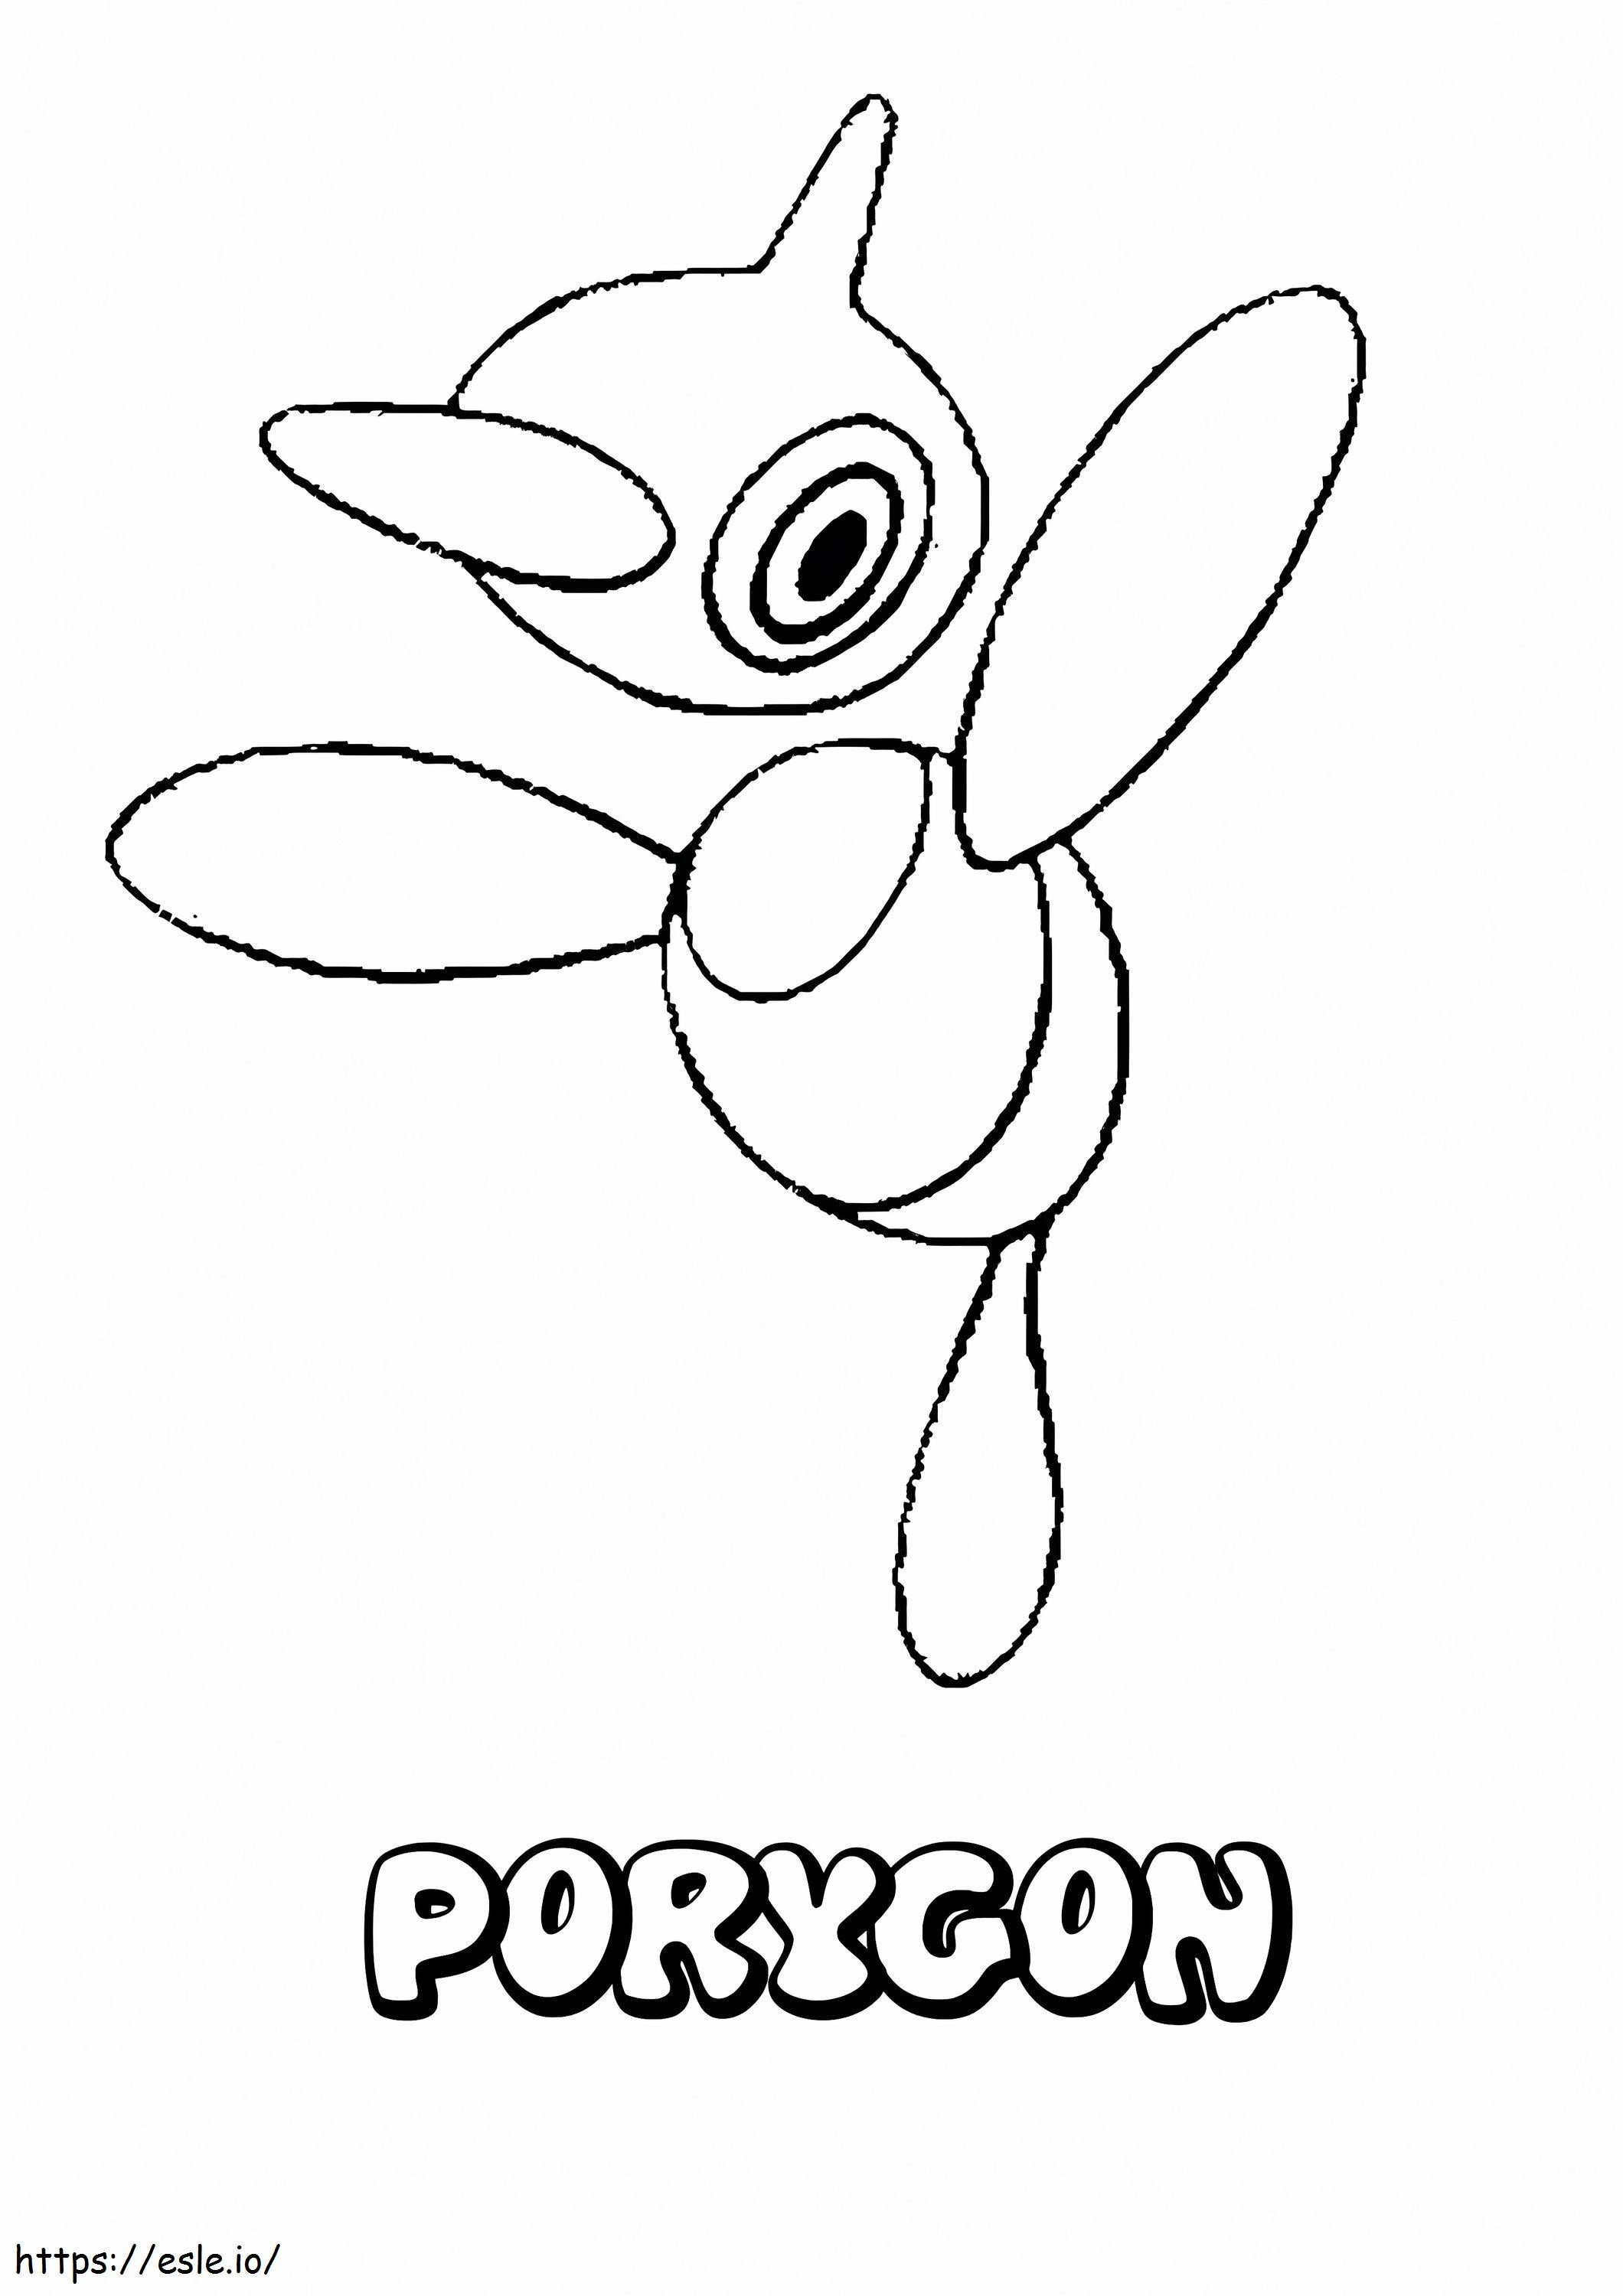 Porygon Z Gen 4 Pokémon kleurplaat kleurplaat